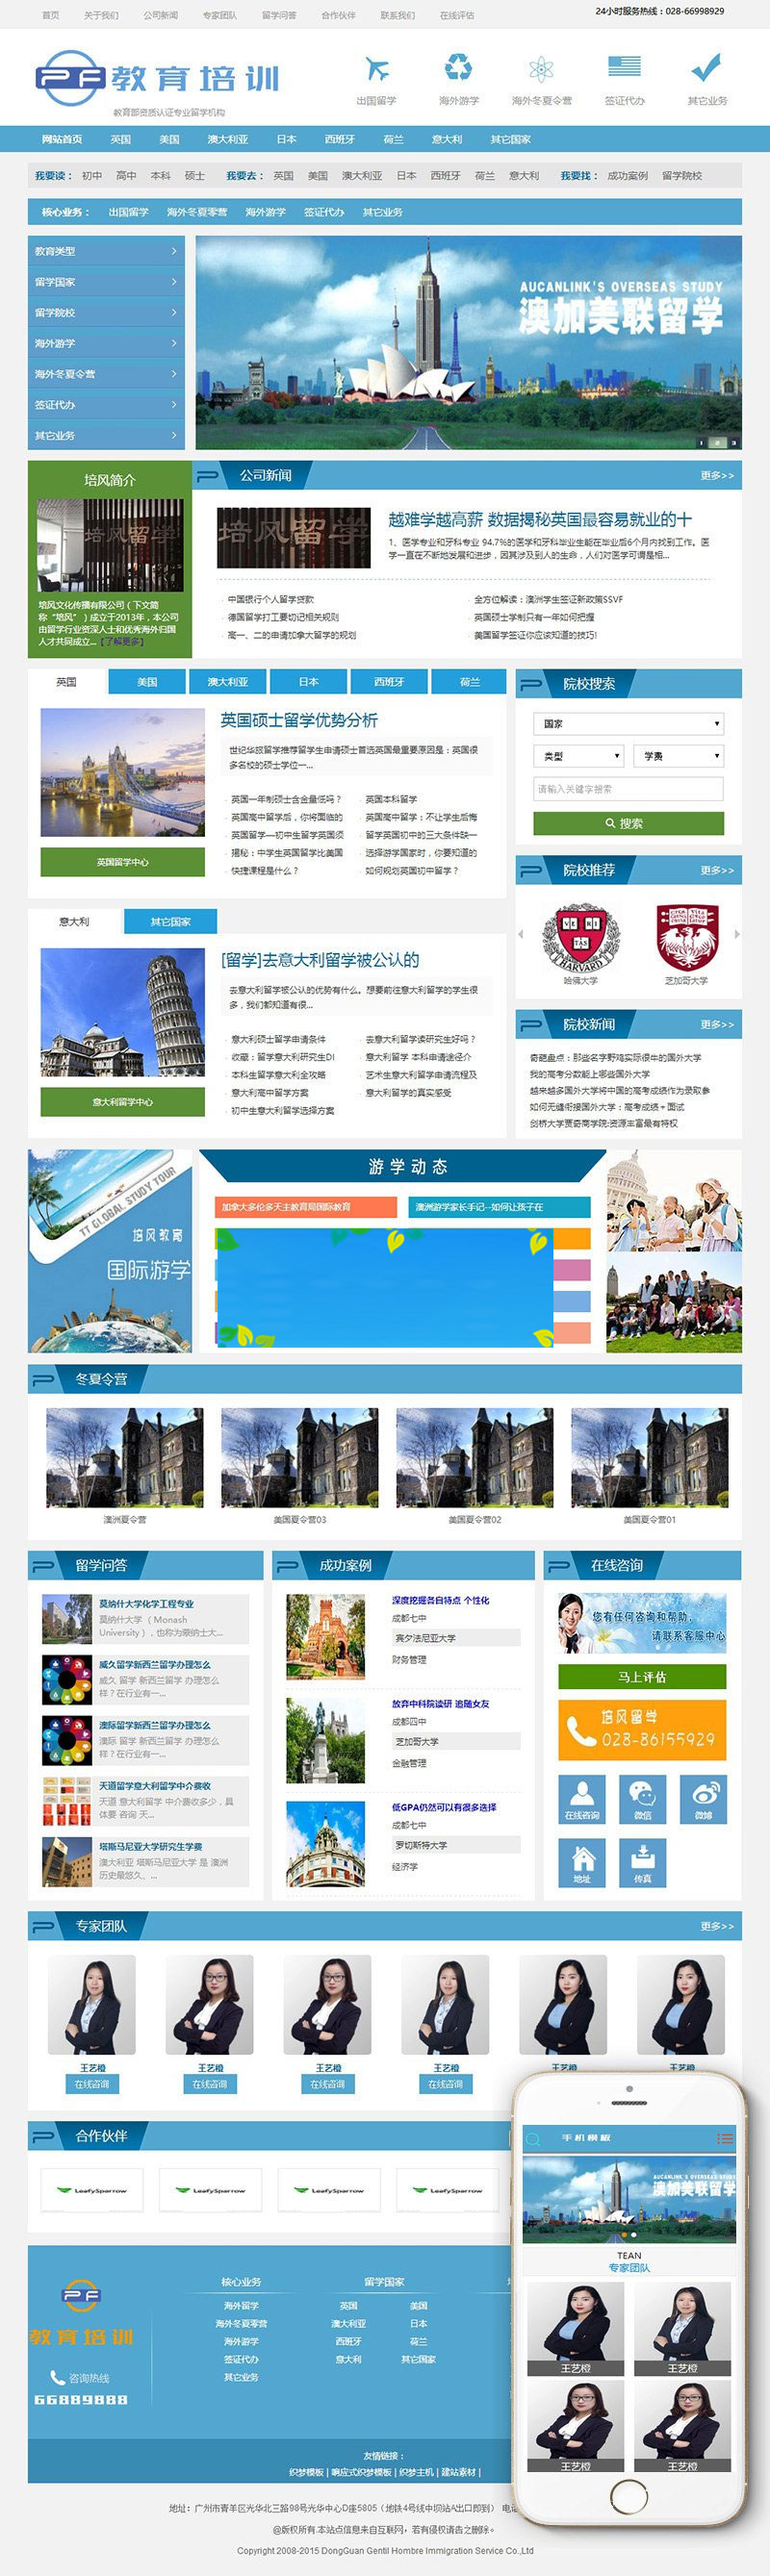 织梦dedecms出国留学教育培训机构网站模板(带手机移动端)